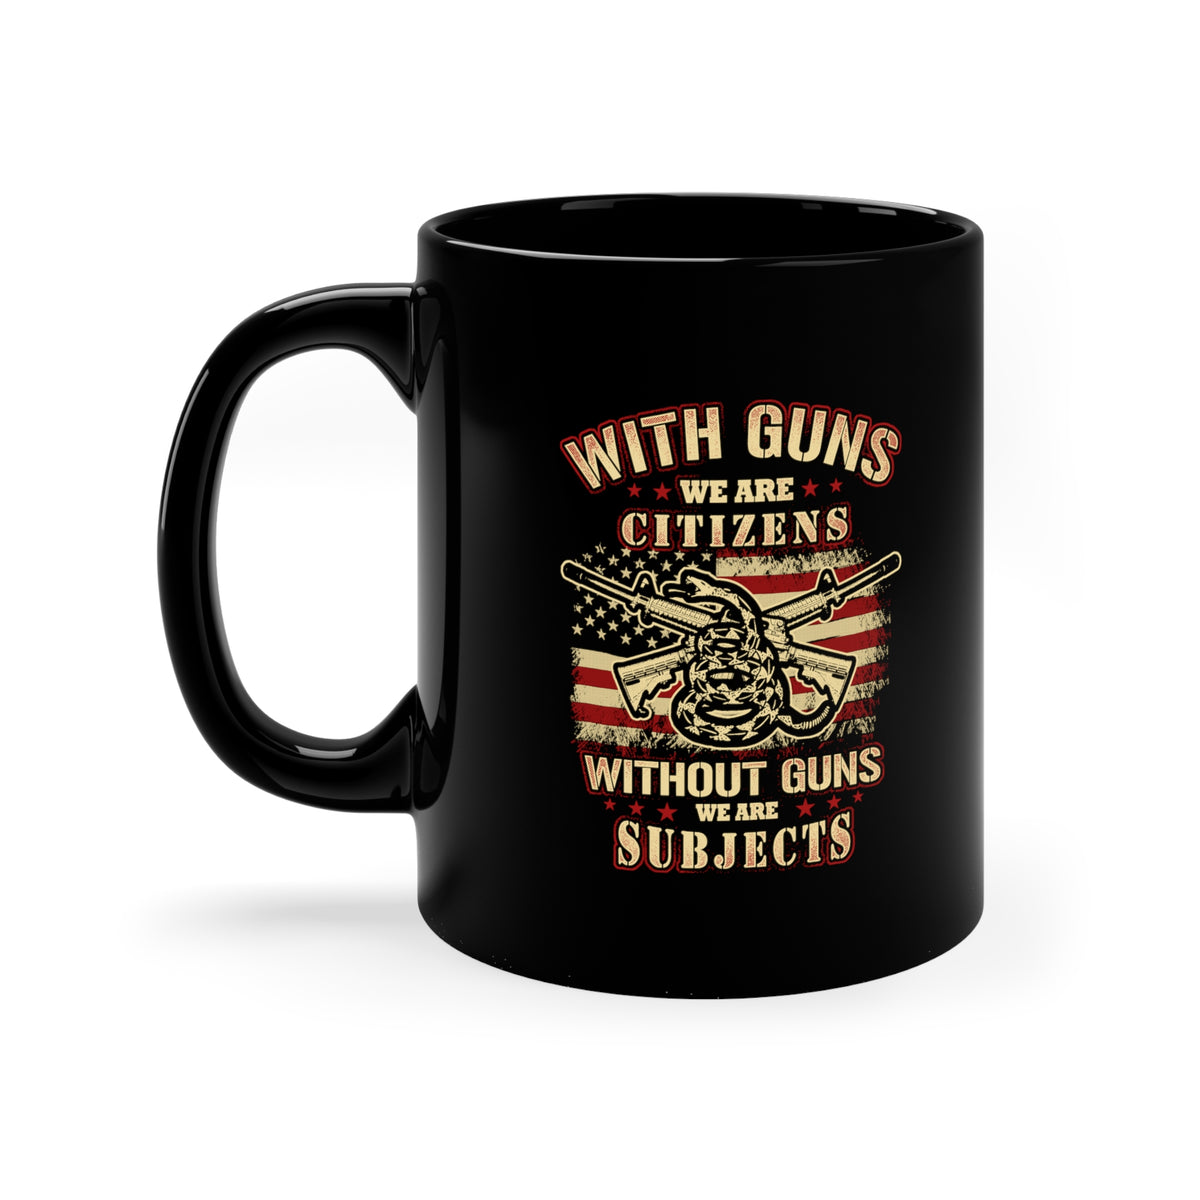 Veteran Mugs / Proud Veteran Mugs